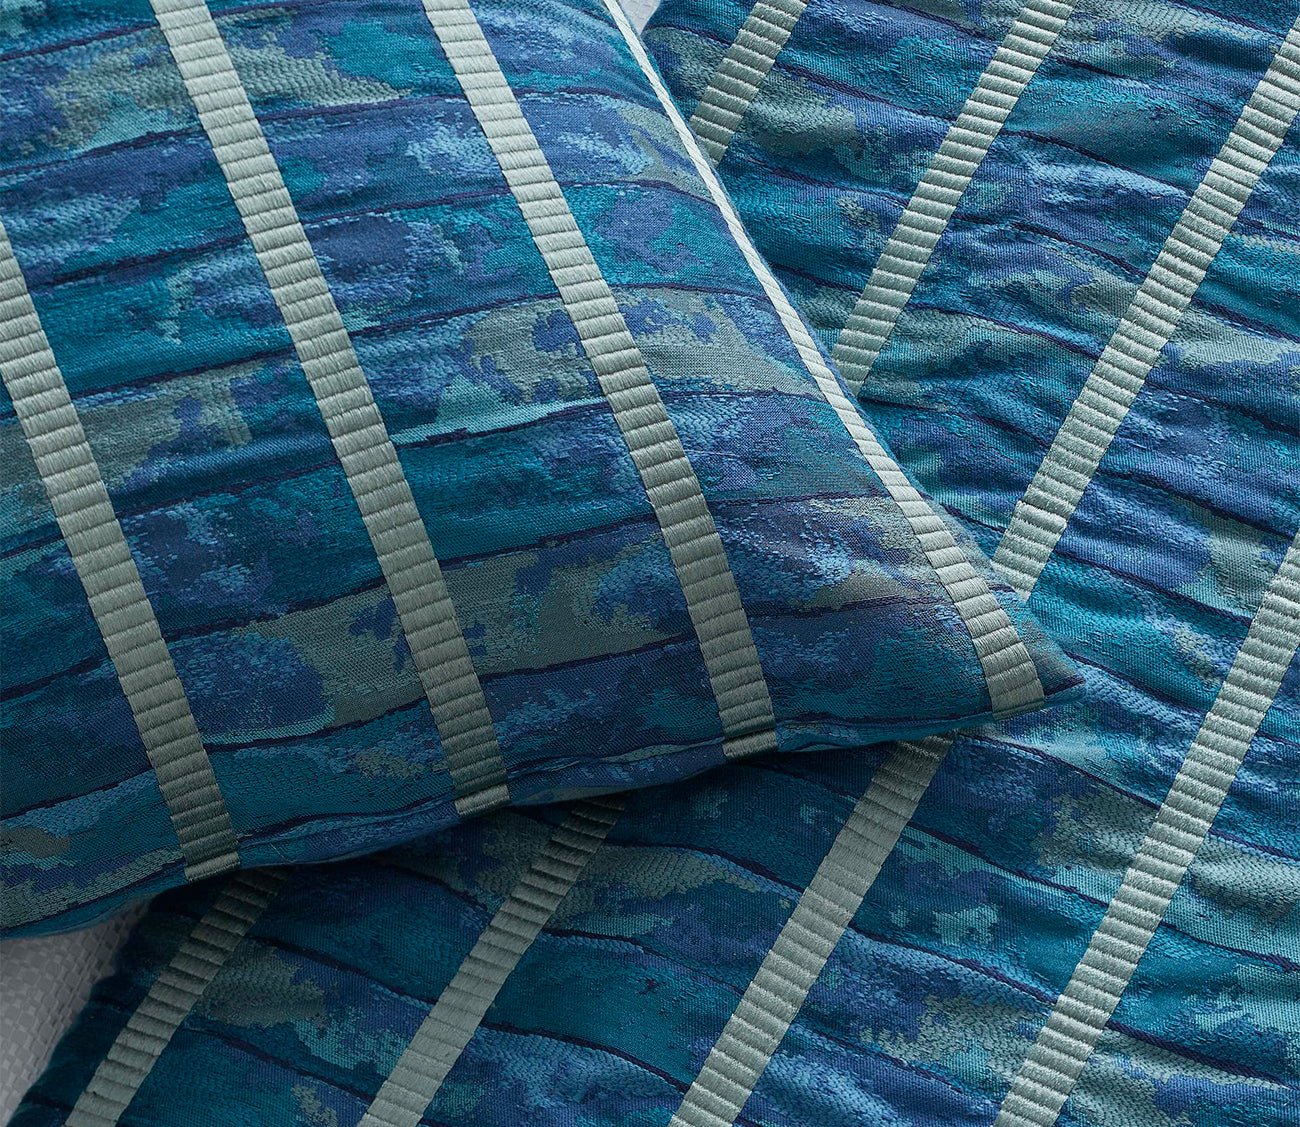 Egyptian Faience Jacquard Throw Blanket by Ann Gish